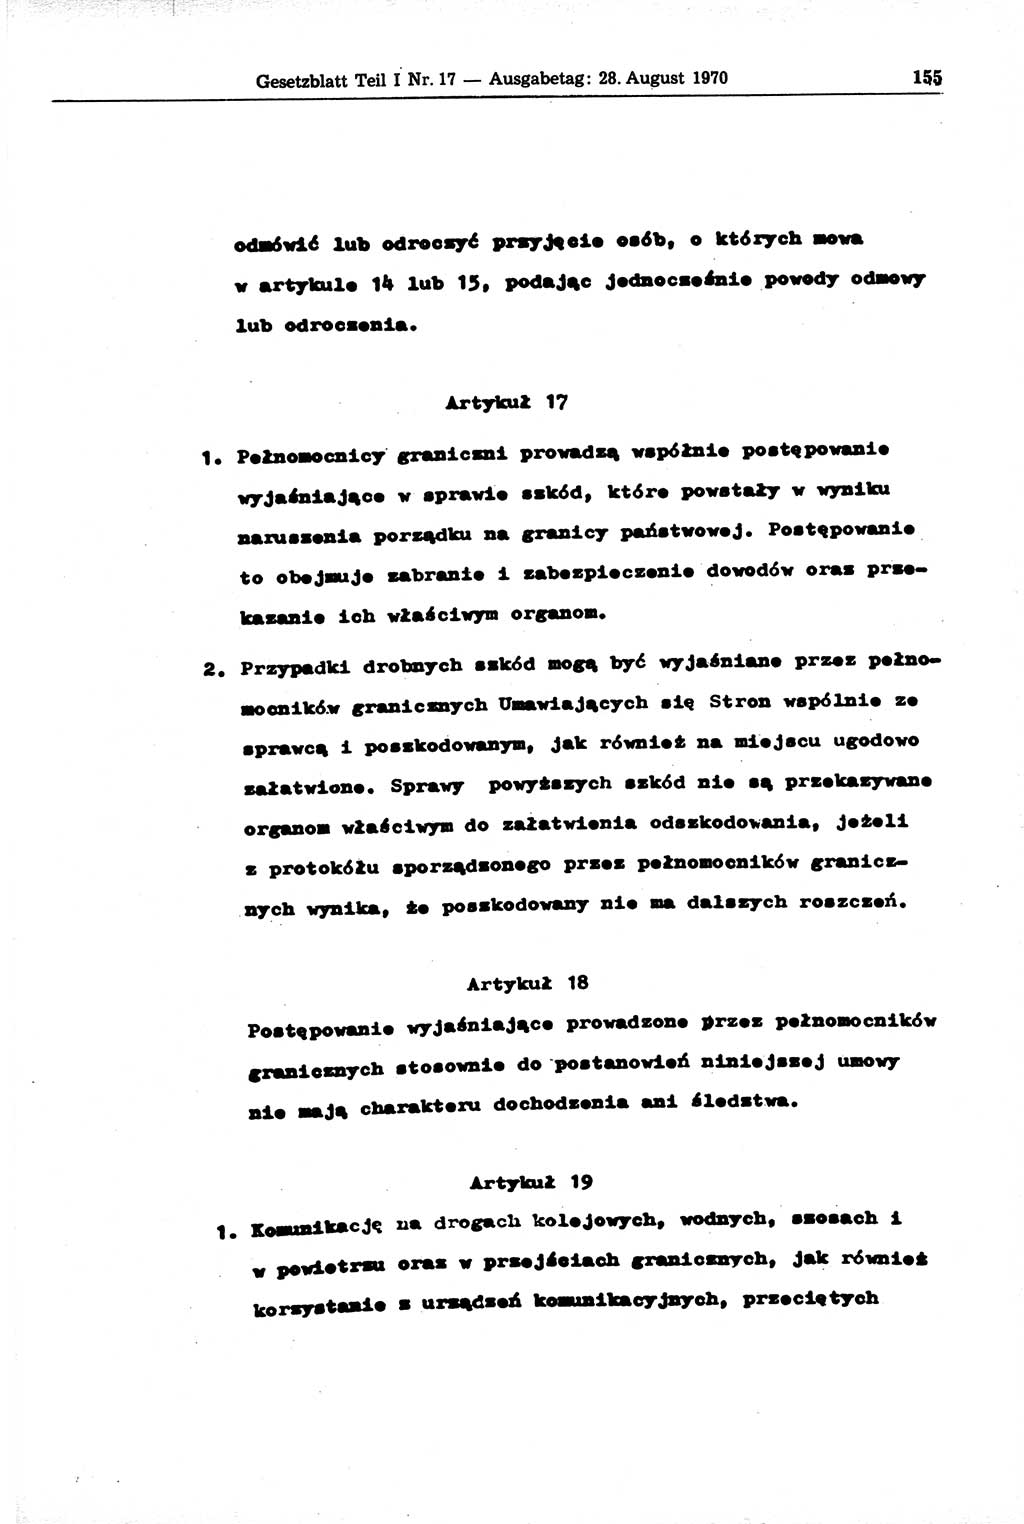 Gesetzblatt (GBl.) der Deutschen Demokratischen Republik (DDR) Teil Ⅰ 1970, Seite 155 (GBl. DDR Ⅰ 1970, S. 155)